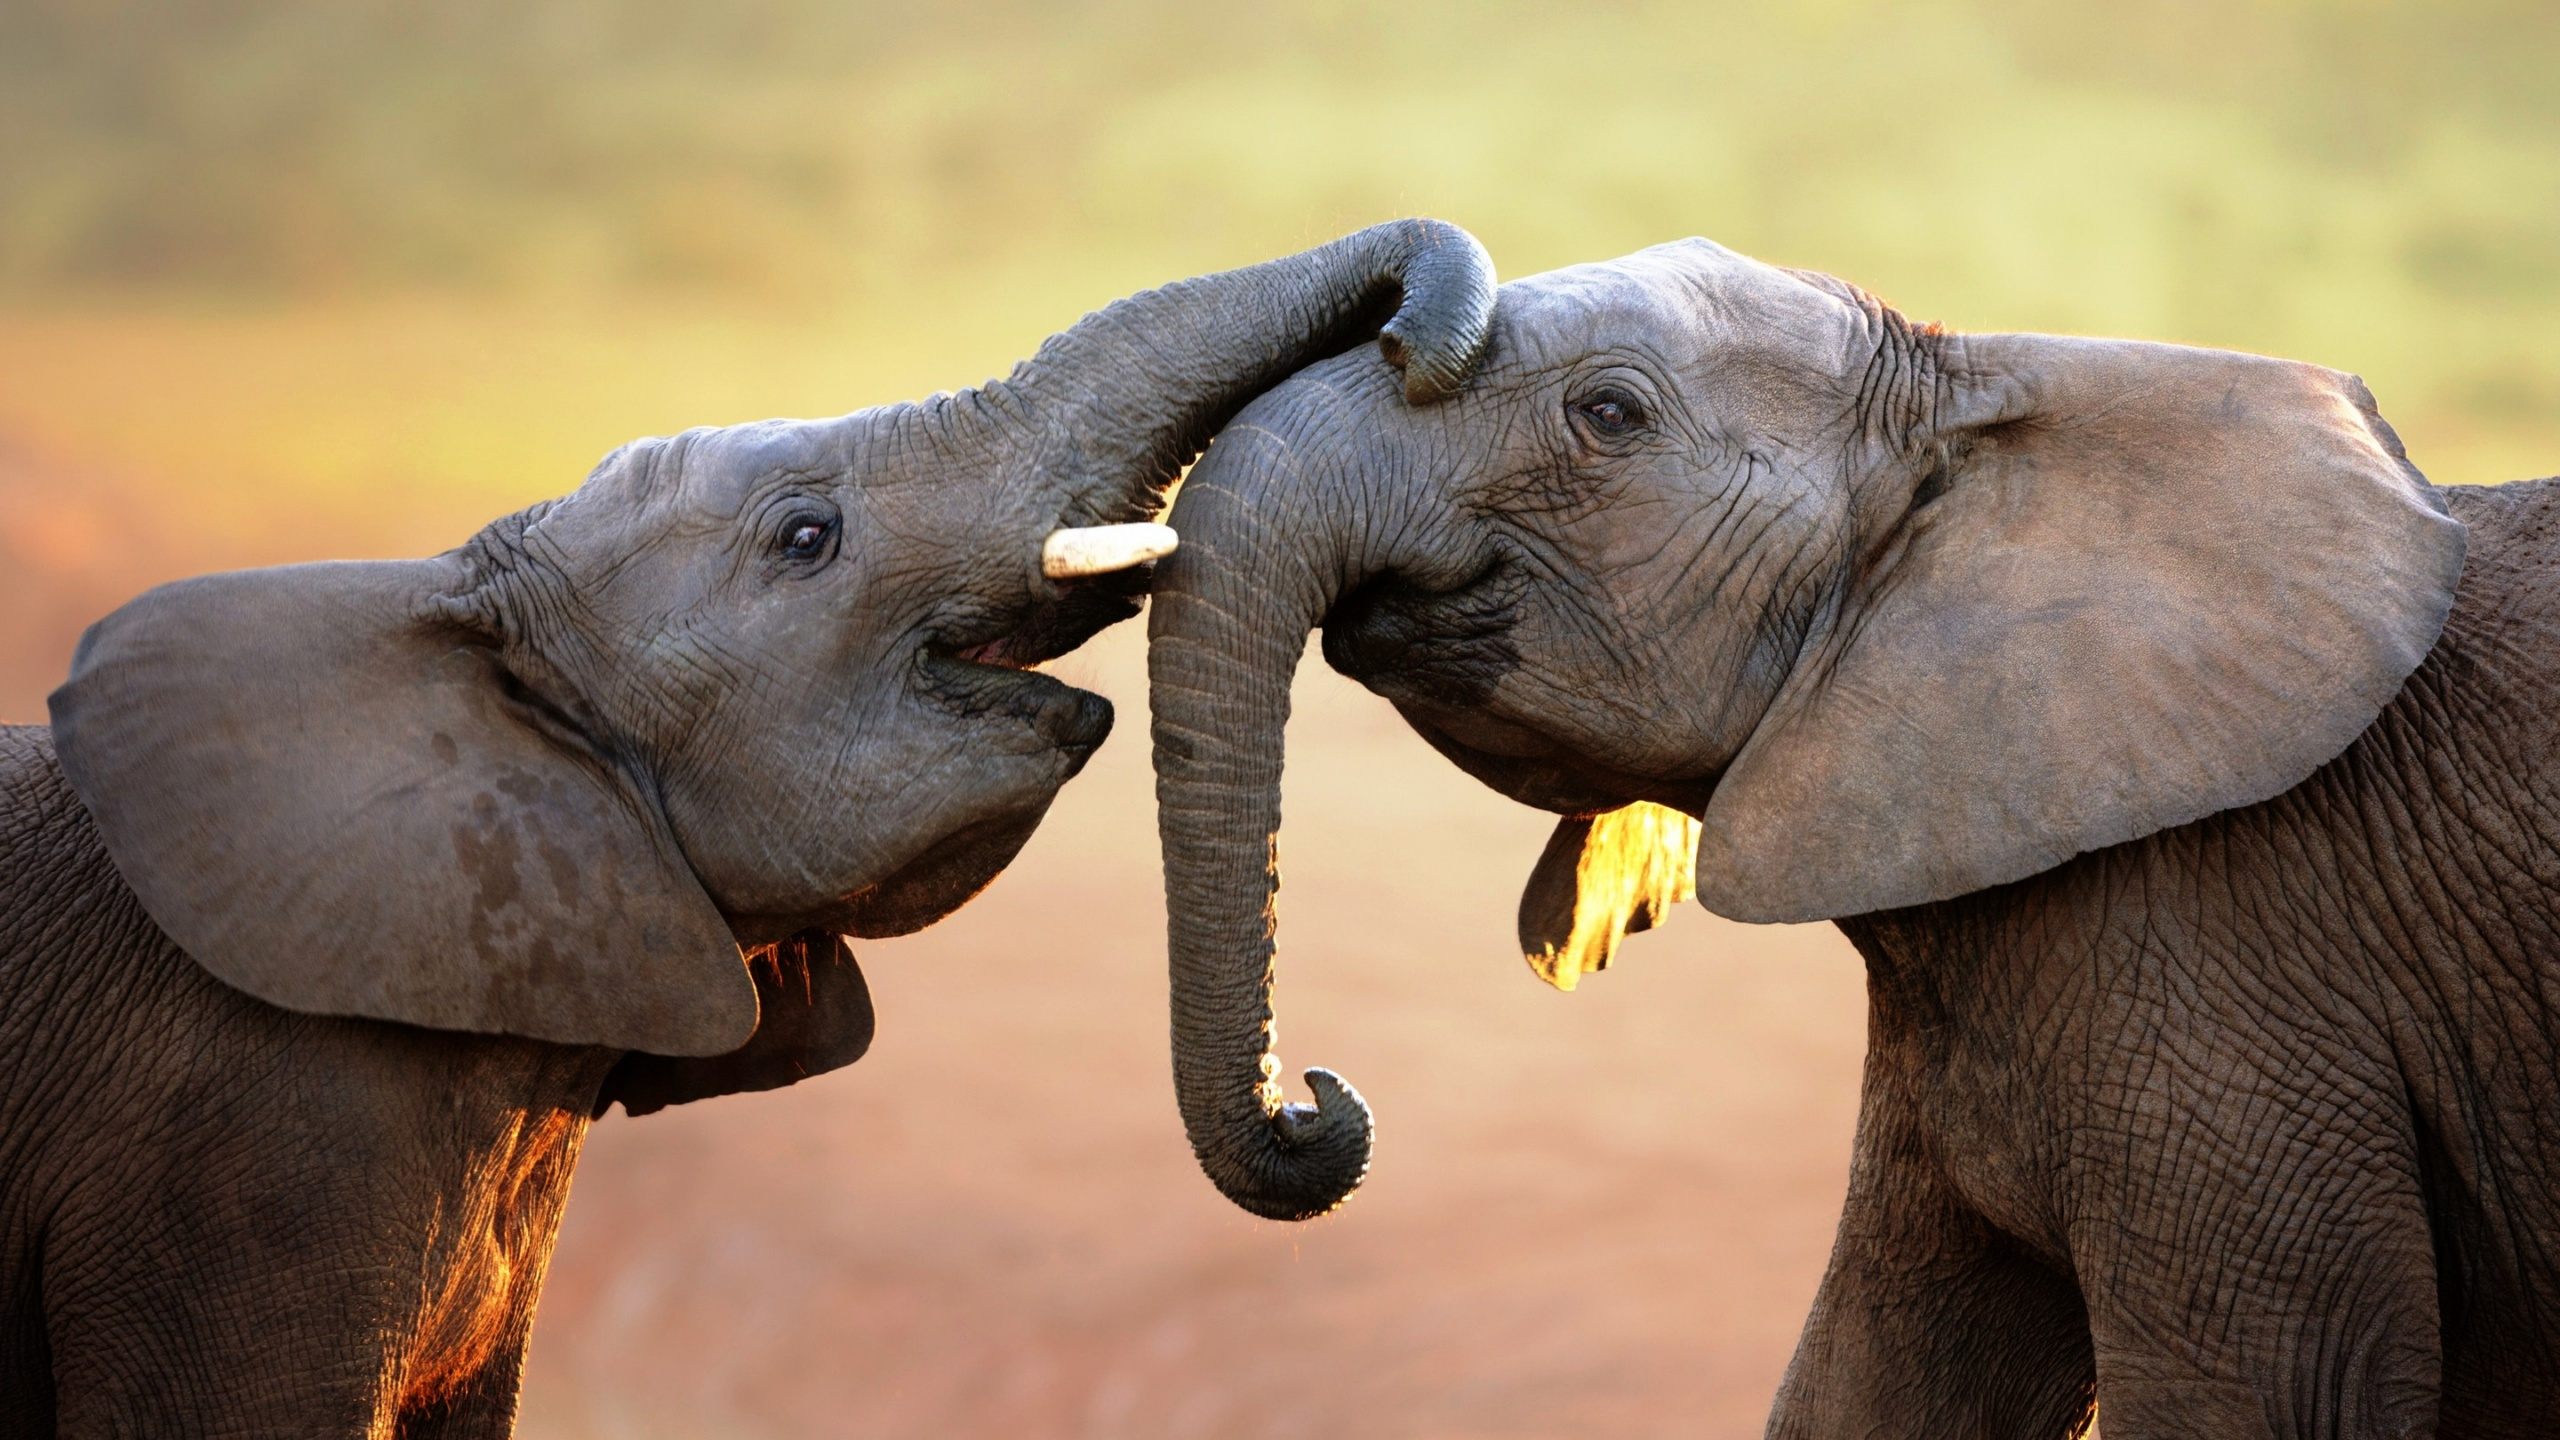 elephant love cute wallpaper - Download Hd elephant love cute ...